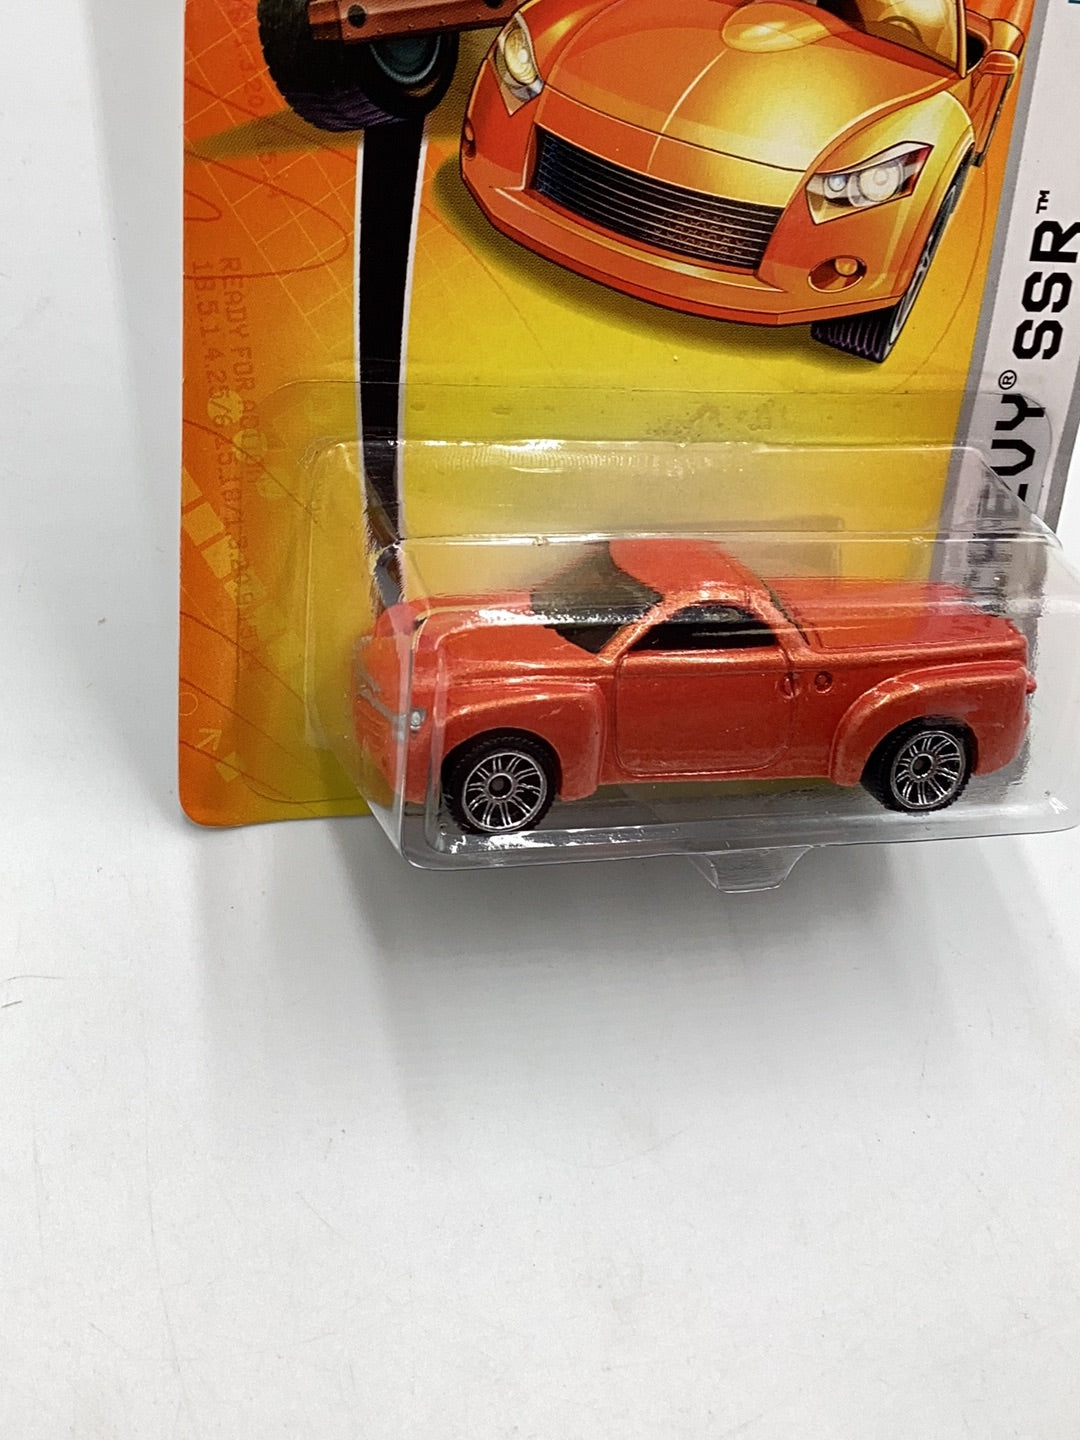 2007 matchbox #18 Chevy SSR orange 18E